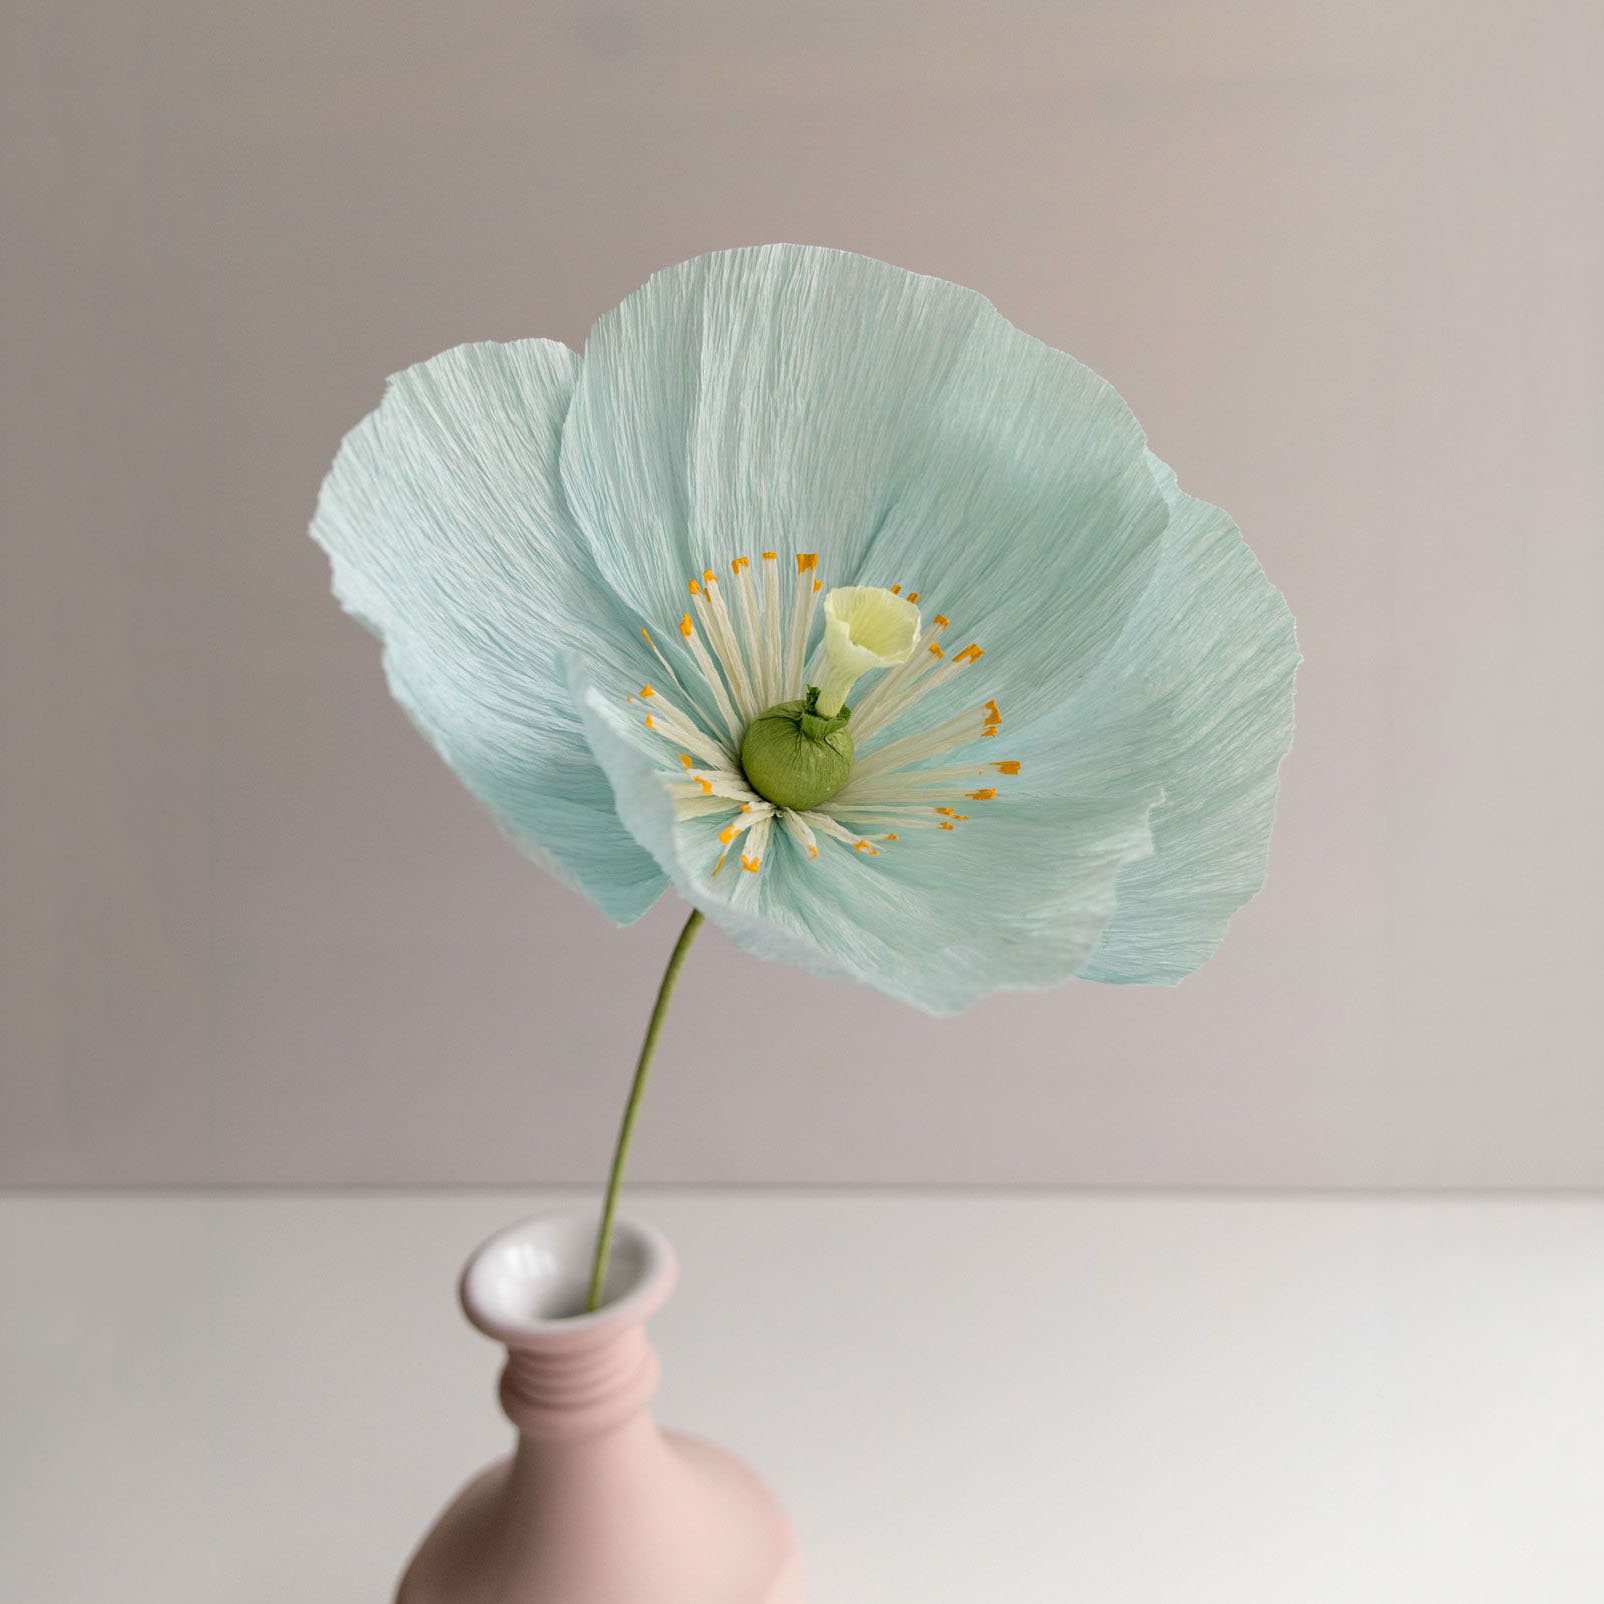 Hướng dẫn làm hoa huệ sông Nin bằng giấy 3D cực đơn giản